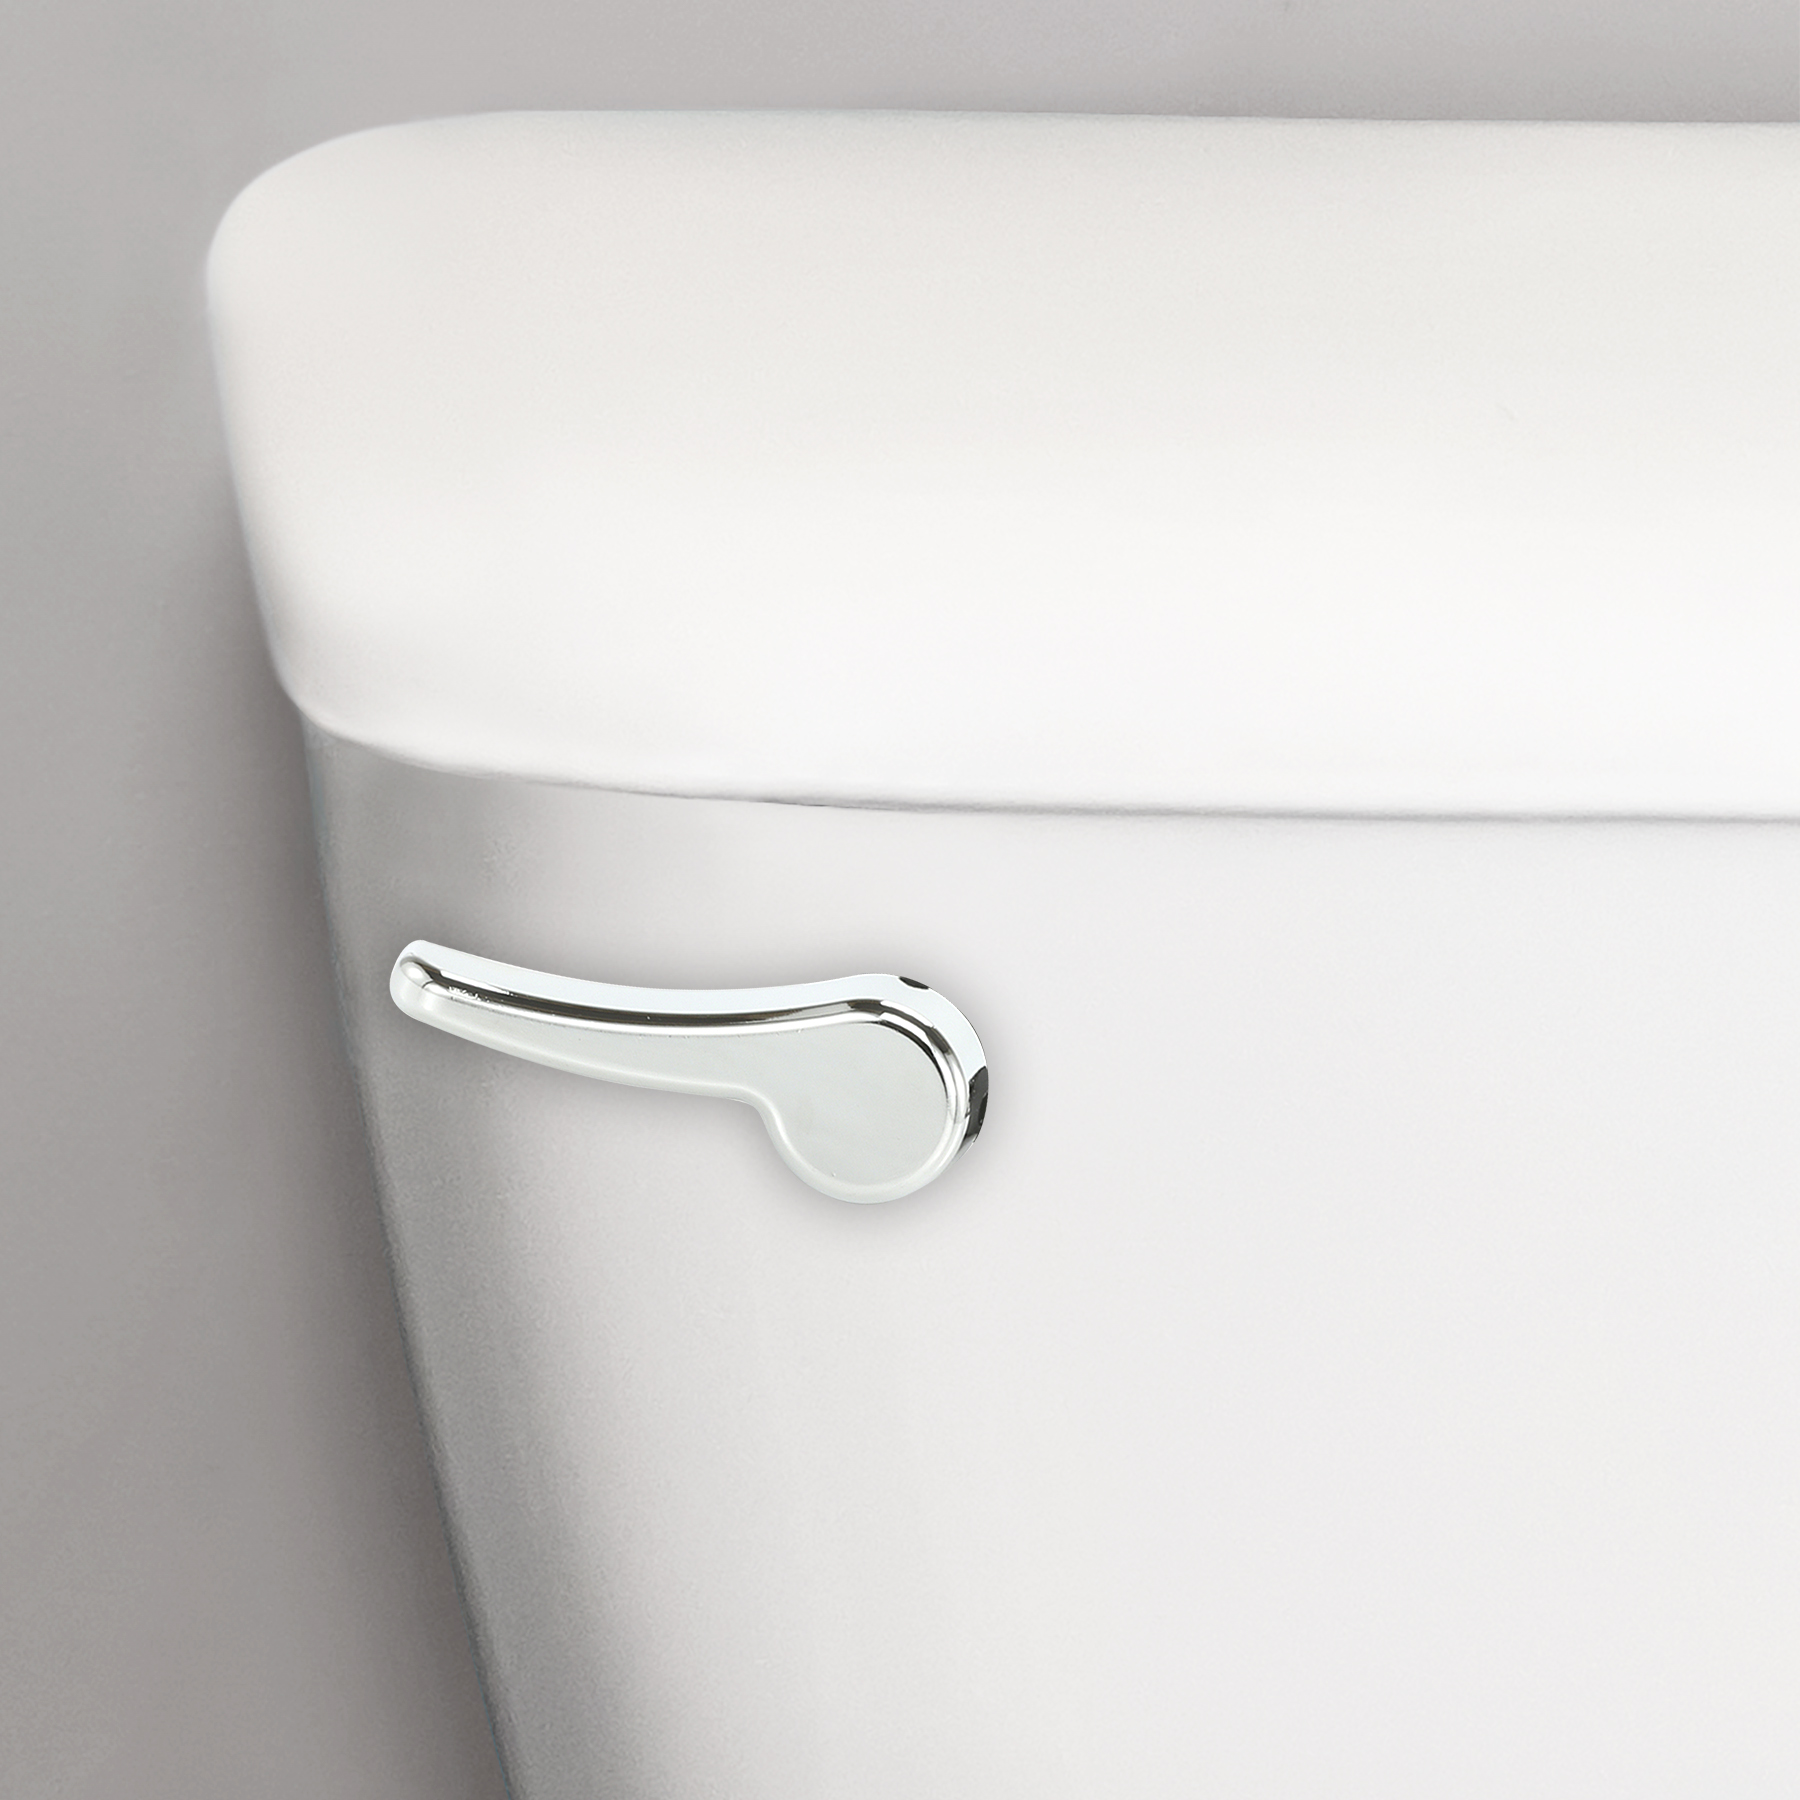 Chrome toilet flush handle on a toilet tank